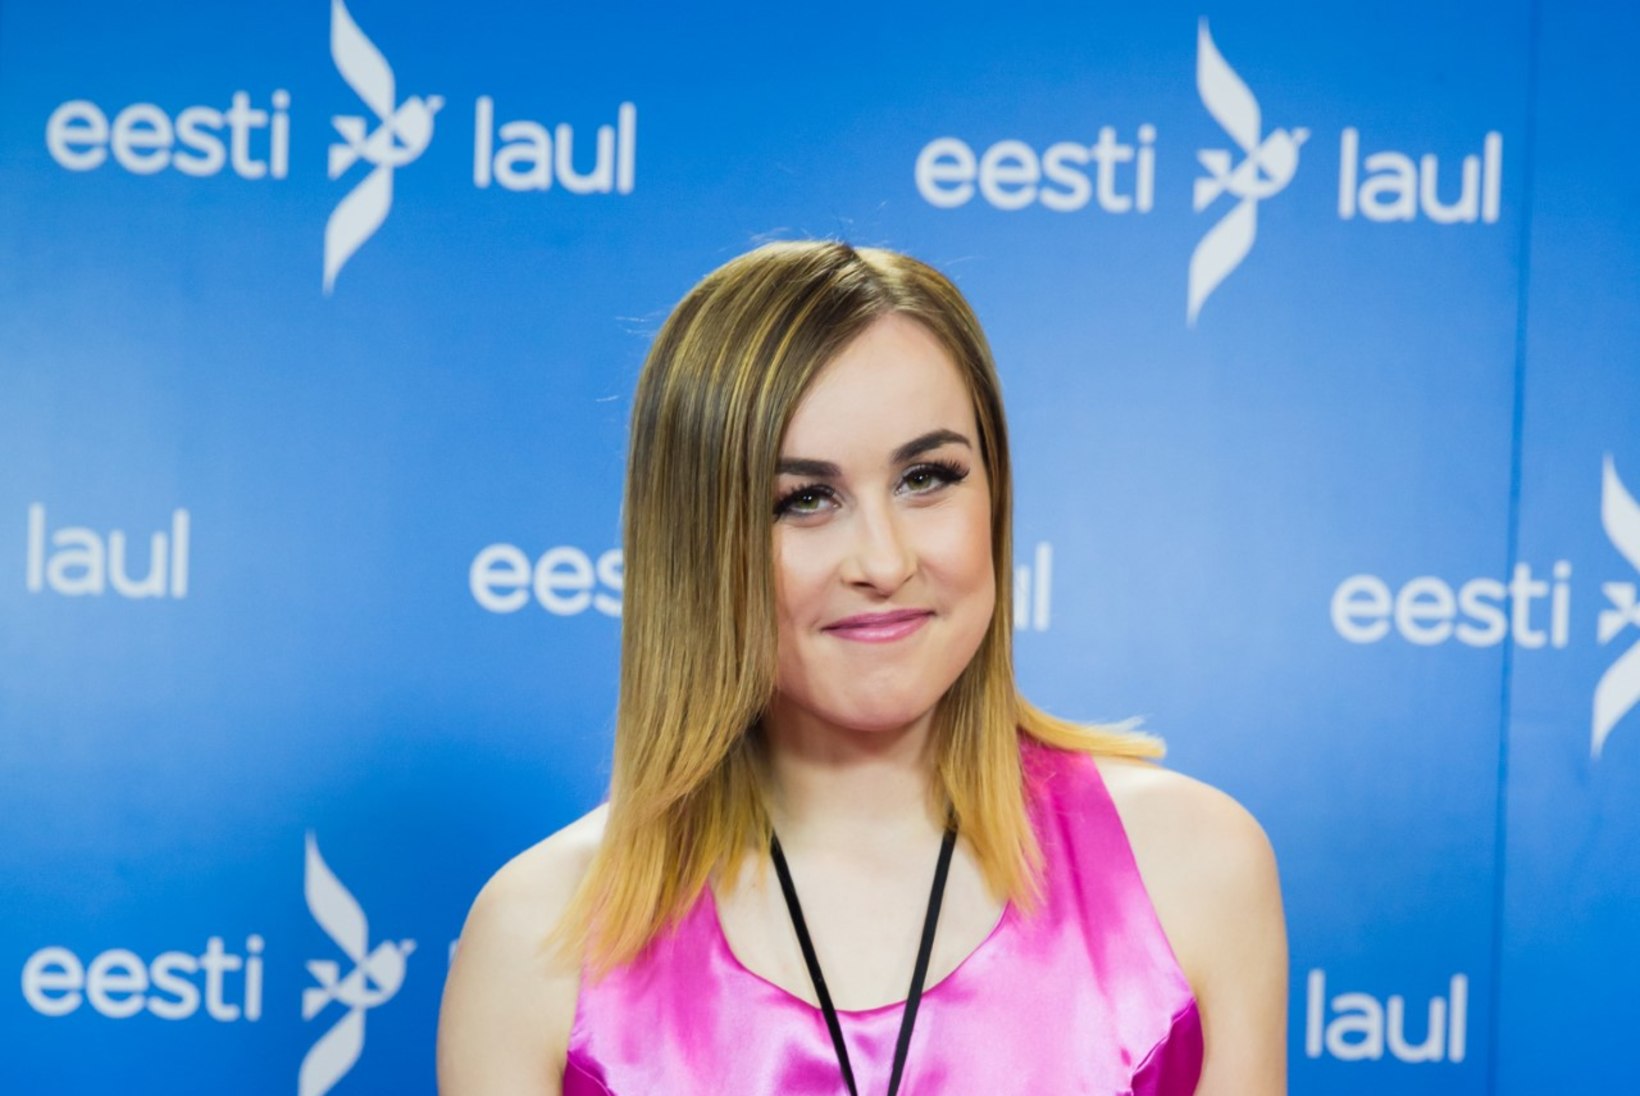 "Finalistid on tugevad, kuid Eesti tänavu Eurovisioni ei võida."